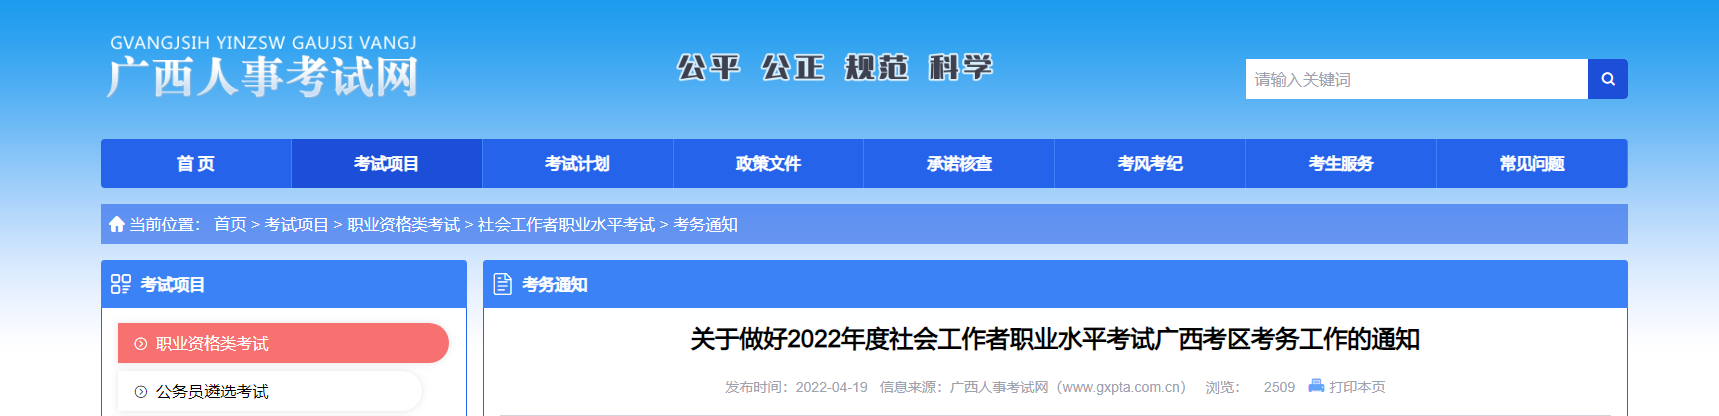 2022广西社会工作者职业水平考试报名时间、条件及入口【4月21日-4月28日】